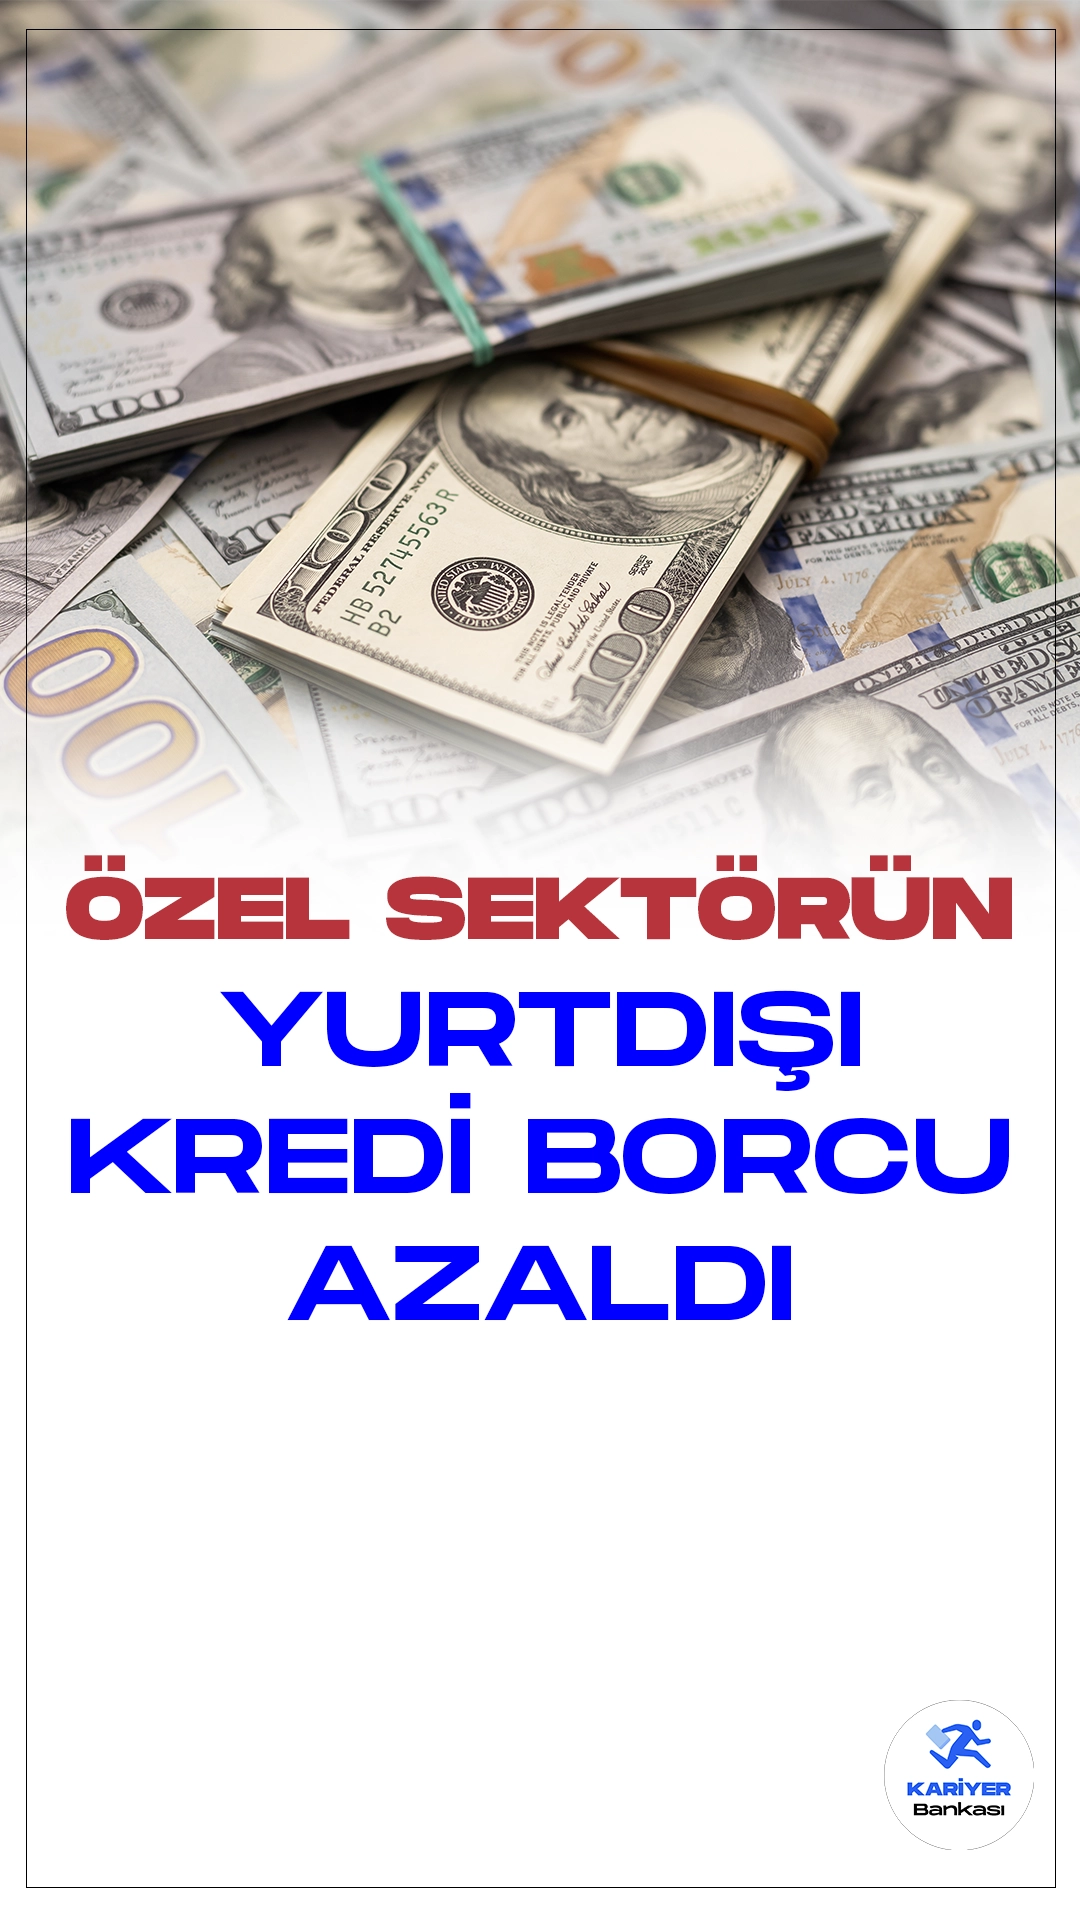 Özel Sektörün Yurt Dışı Kredi Borçları Ekimde 975 Milyon Dolar Azaldı.Türkiye Cumhuriyet Merkez Bankası, Ekim 2023'ün özel sektörün yurt dışı kredi borcu gelişmelerini açıkladı. Toplam borç, 2022 sonuna göre 975 milyon dolar azalarak 157,8 milyar dolara geriledi.